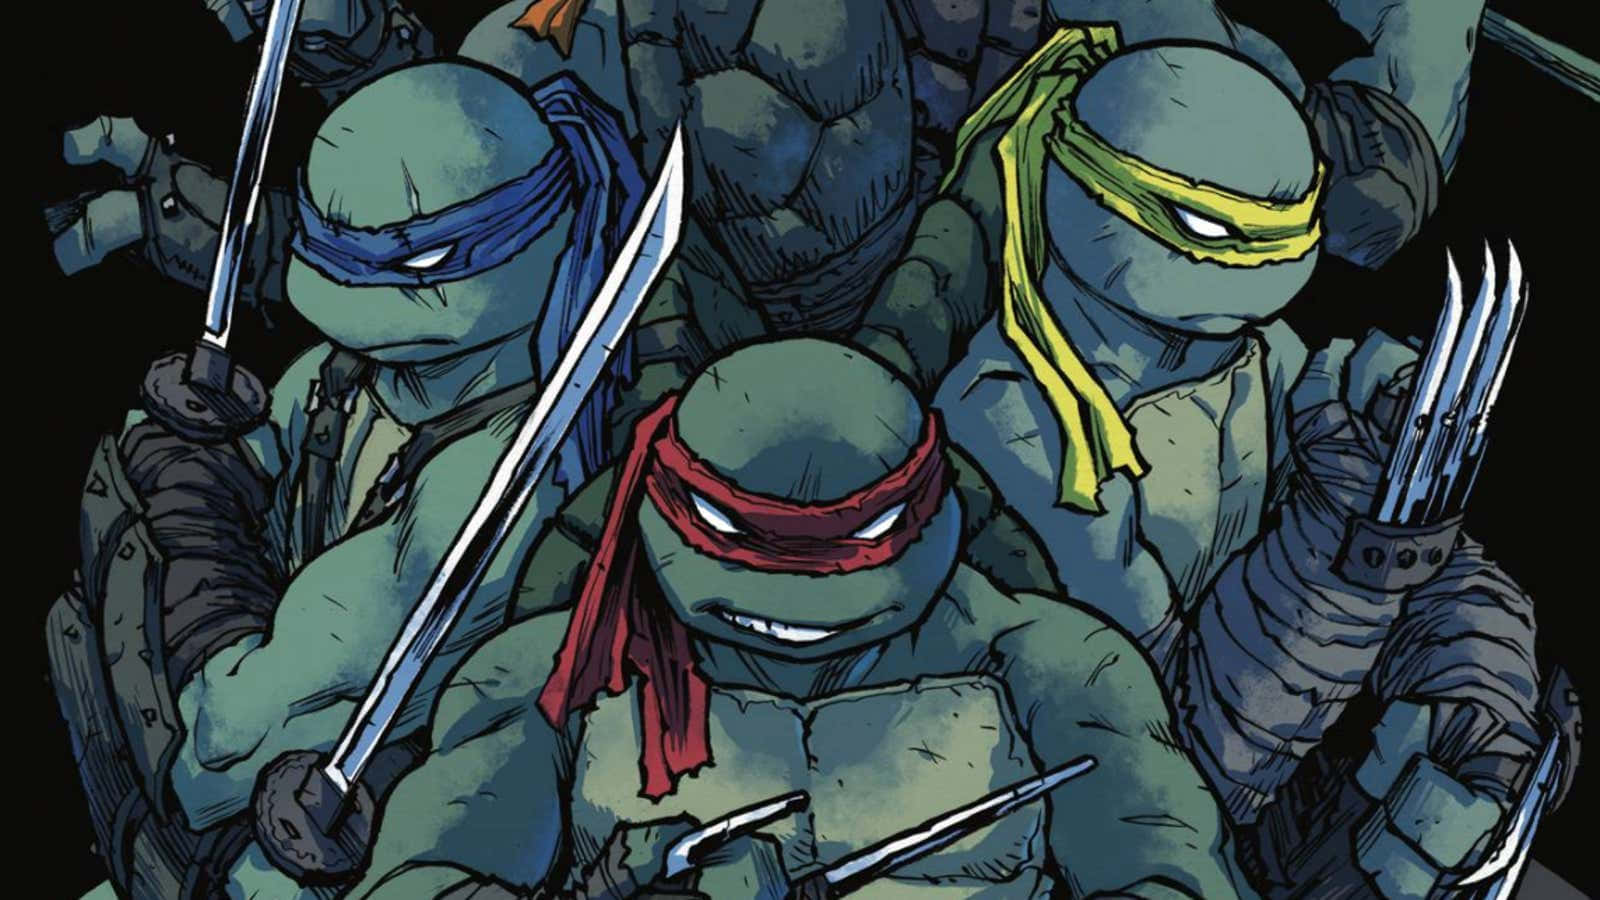 The Teenage Mutant Ninja Turtles Wallpaper